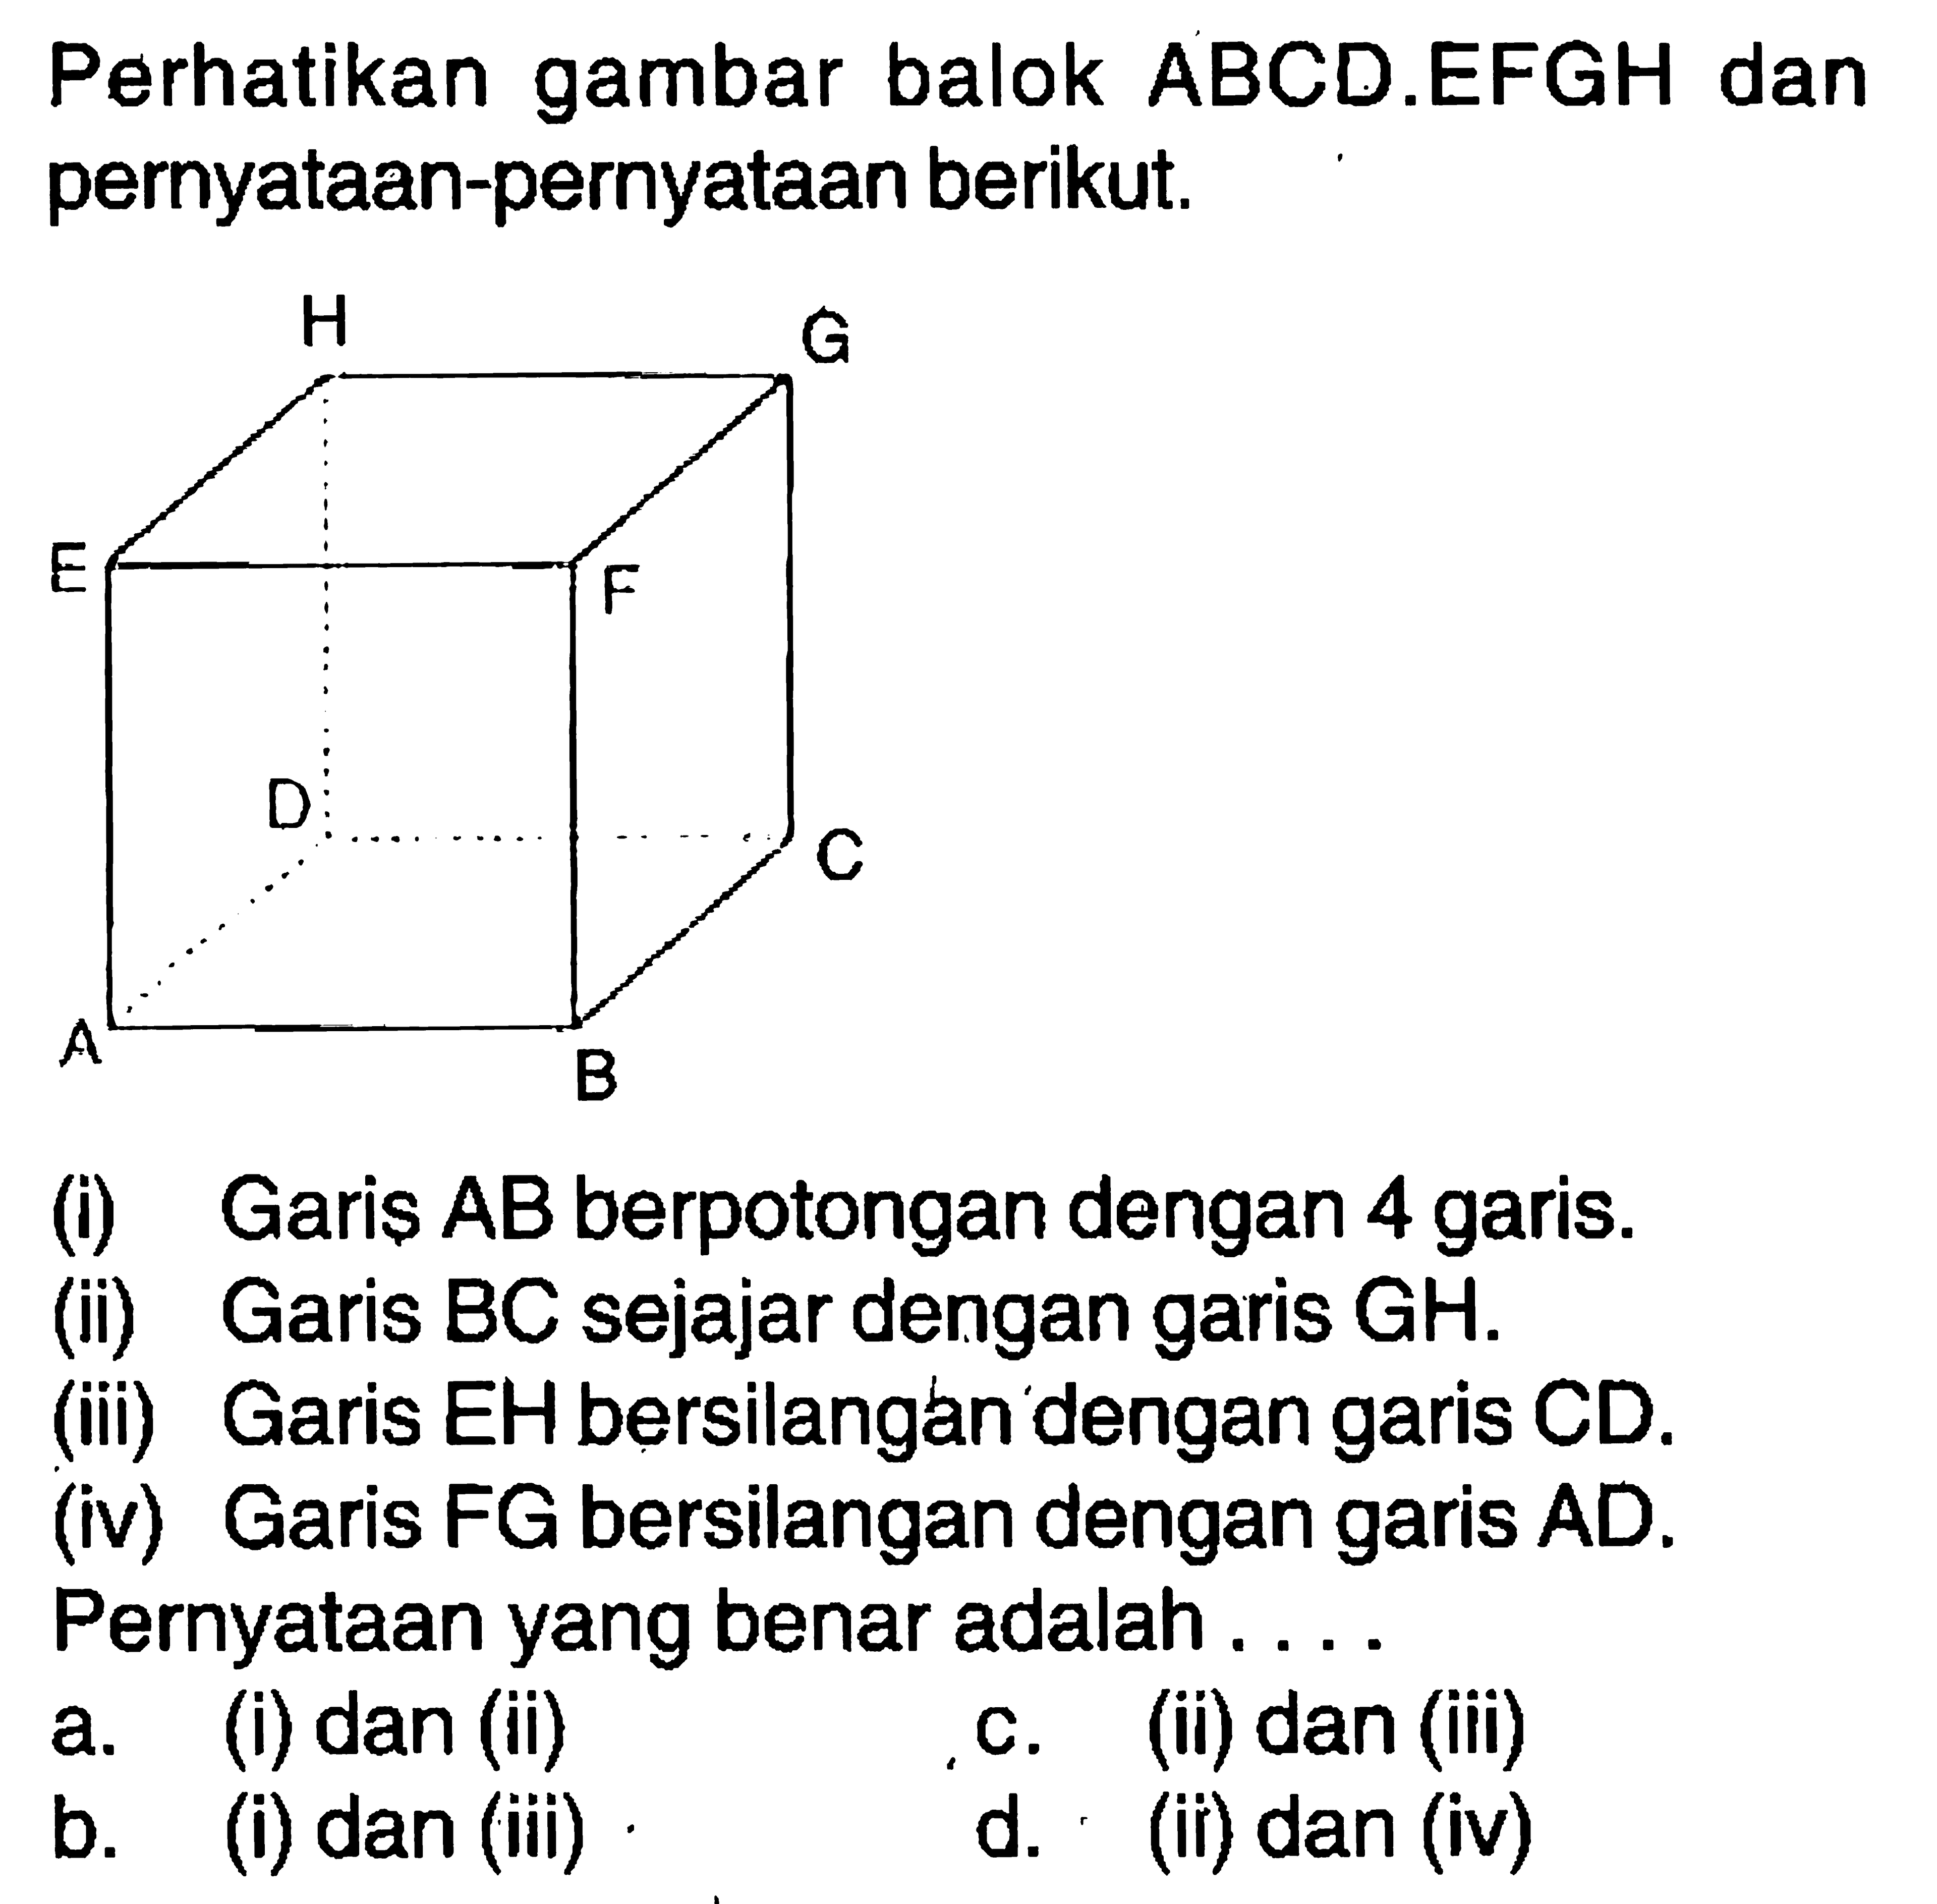 Perhatikan gambar balok ABCD.EFGH dan pernyataan-pernyataan berikut.(i) Garis AB berpotongan dengan 4 garis.(ii) Garis BC sejajar dengan garis GH.(iii) Garis EH bersilangan dengan garis CD.(iv) Garis FG bersilangan dengan garis AD.Pernyataan yang benar adalah . . . .a. (i) dan (ii)c. (ii) dan (iii)b. (i) dan (iii)d. (ii) dan (iv)